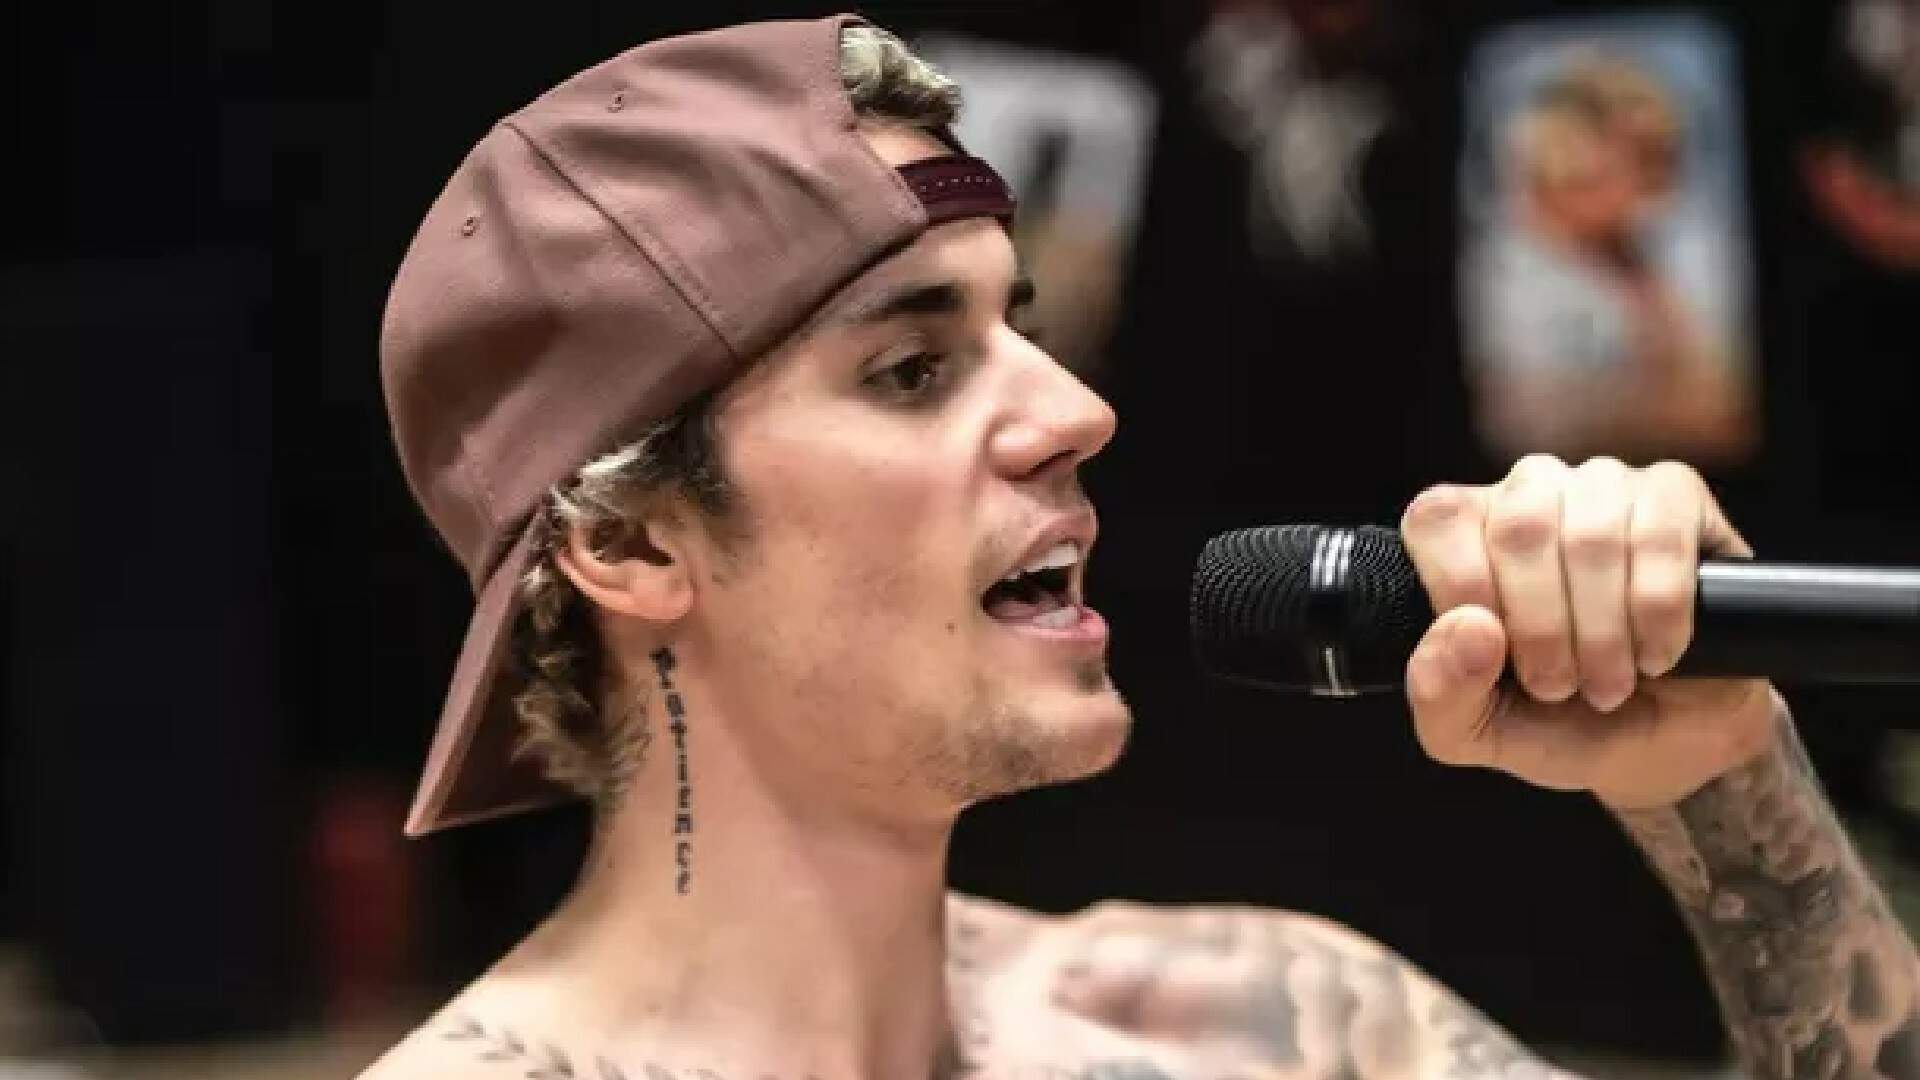 Justin Bieber impressiona fãs ao compartilhar vídeo de sua famosa música em versão funk - Metropolitana FM